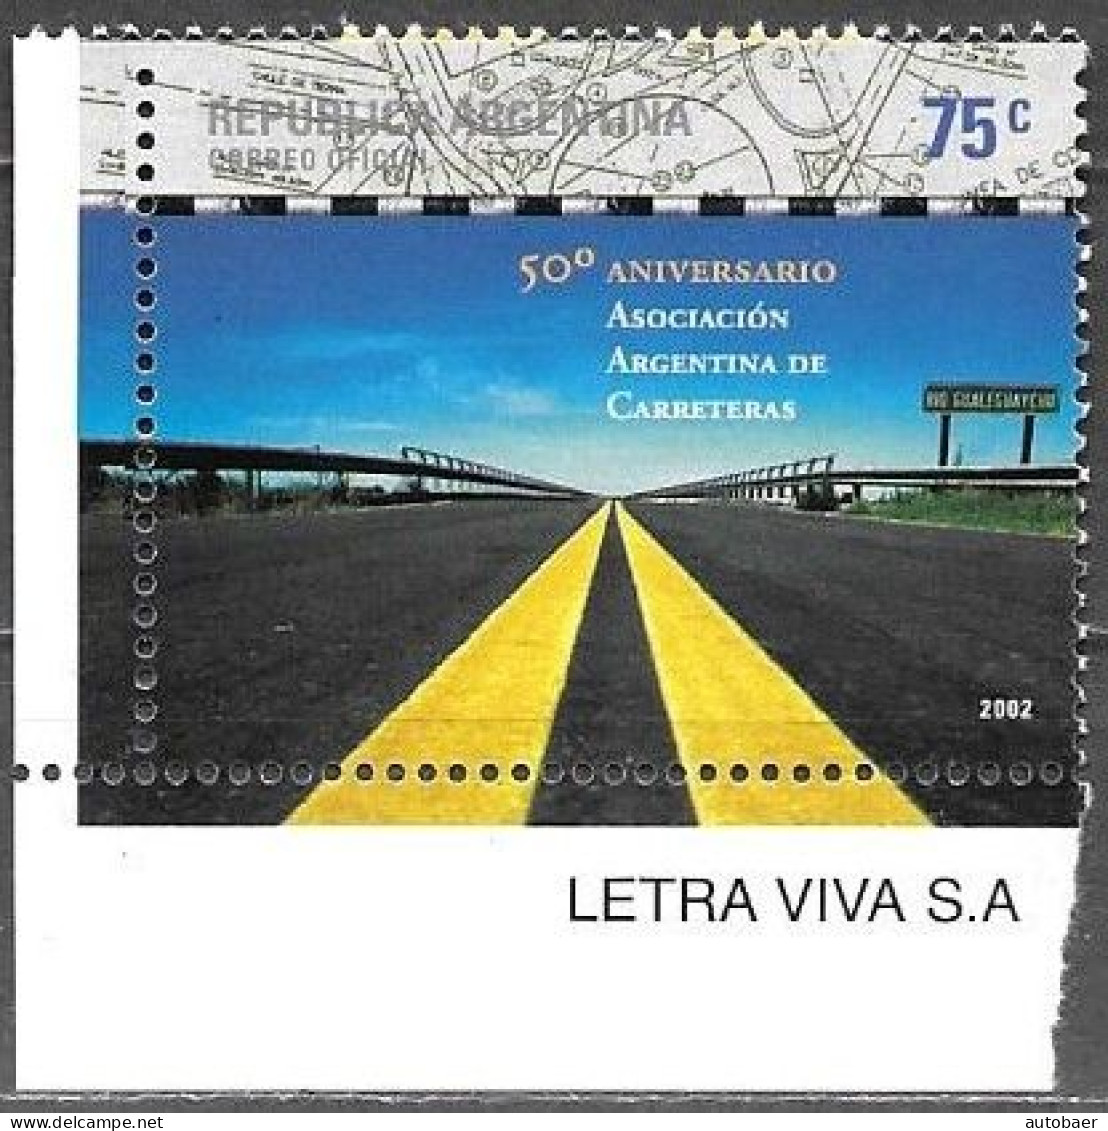 Argentina 2002 50 Aniversario Asociacion Argentina De Carreteras Mi. 2776 MNH Postfrisch Neuf ** - Nuevos